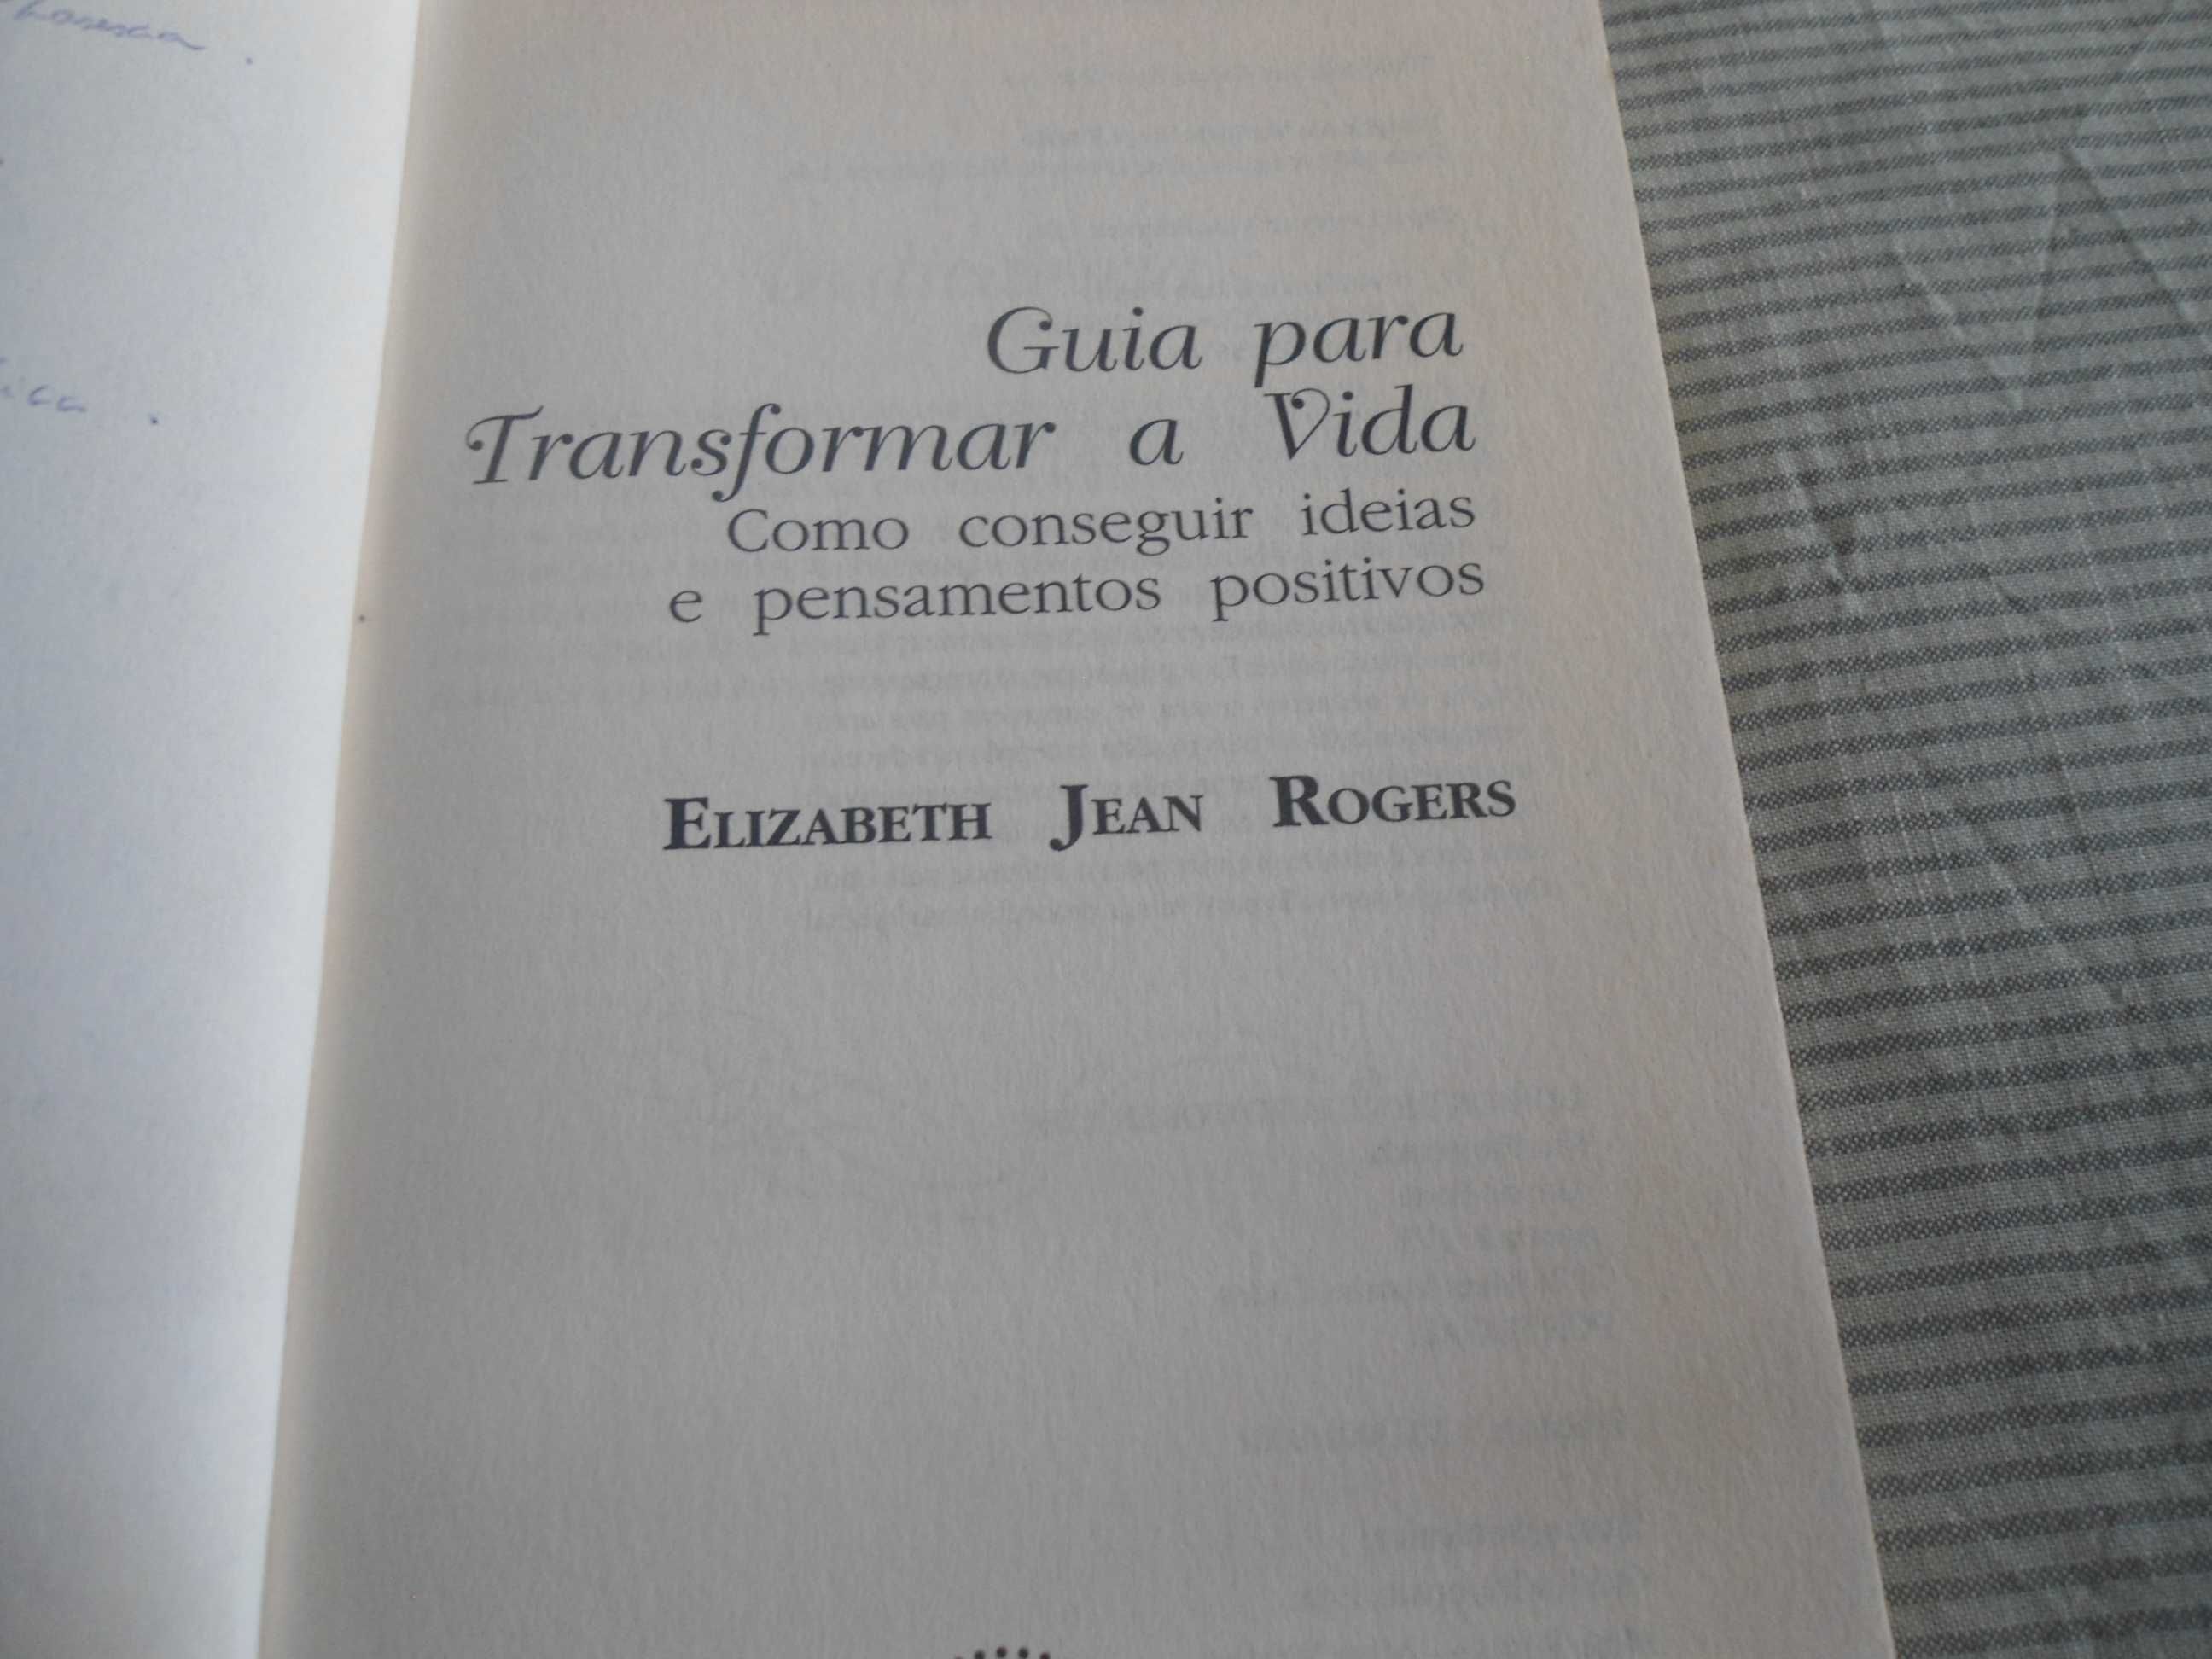 Guia para transformar a vida por Elizabeth Jean Rogers